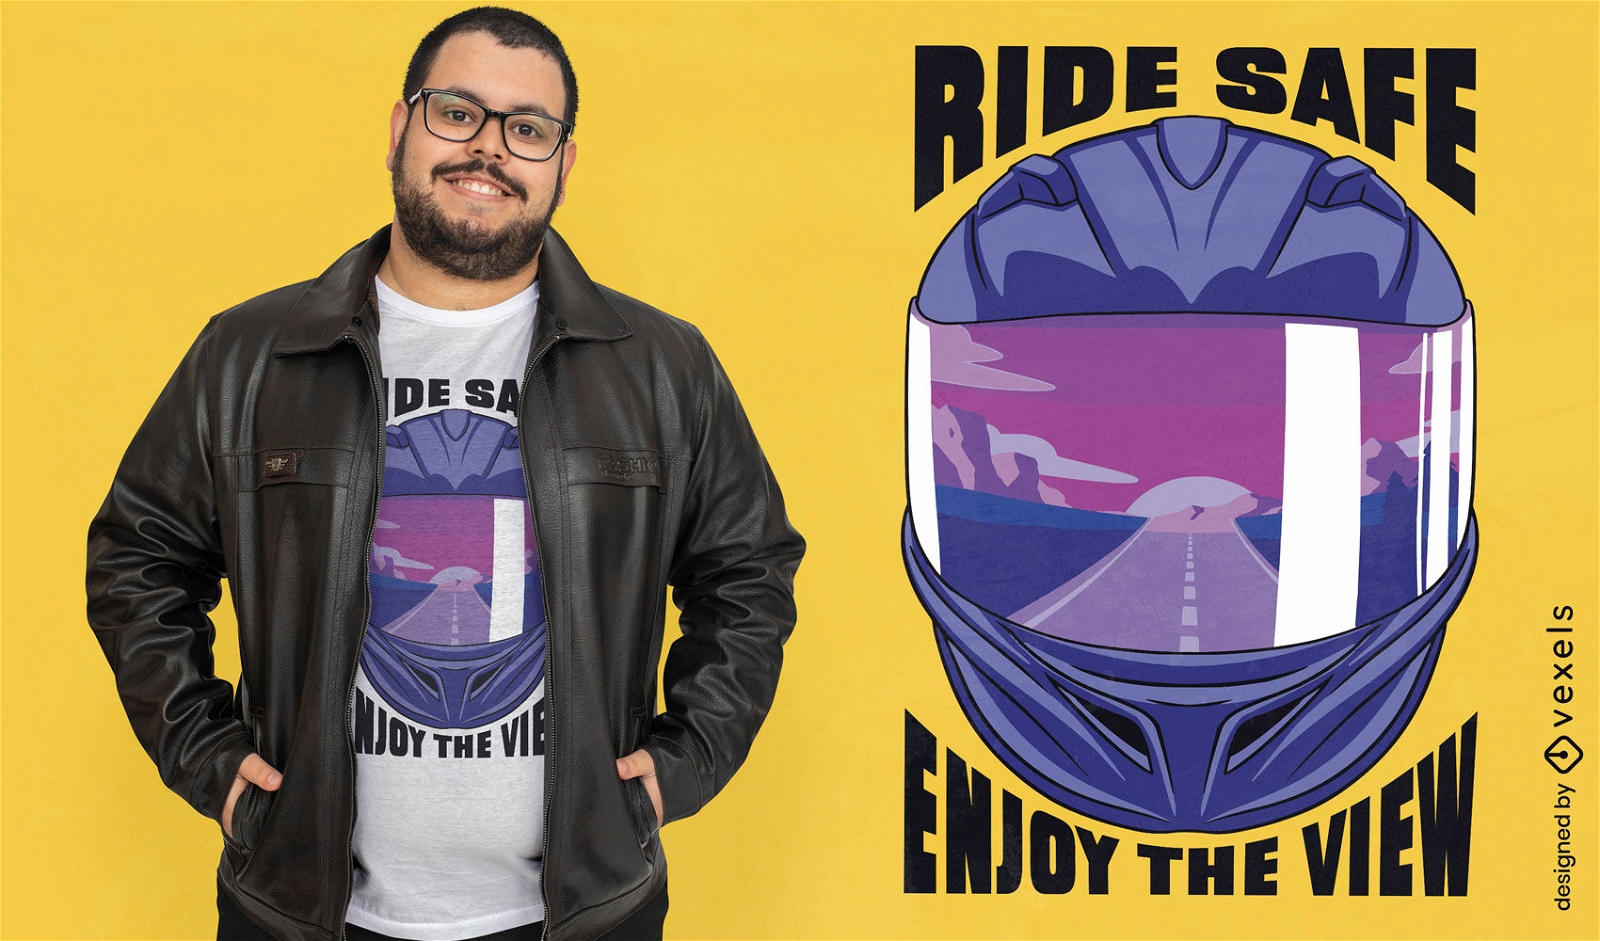 Ride safe enjoy the view biker t-shirt design